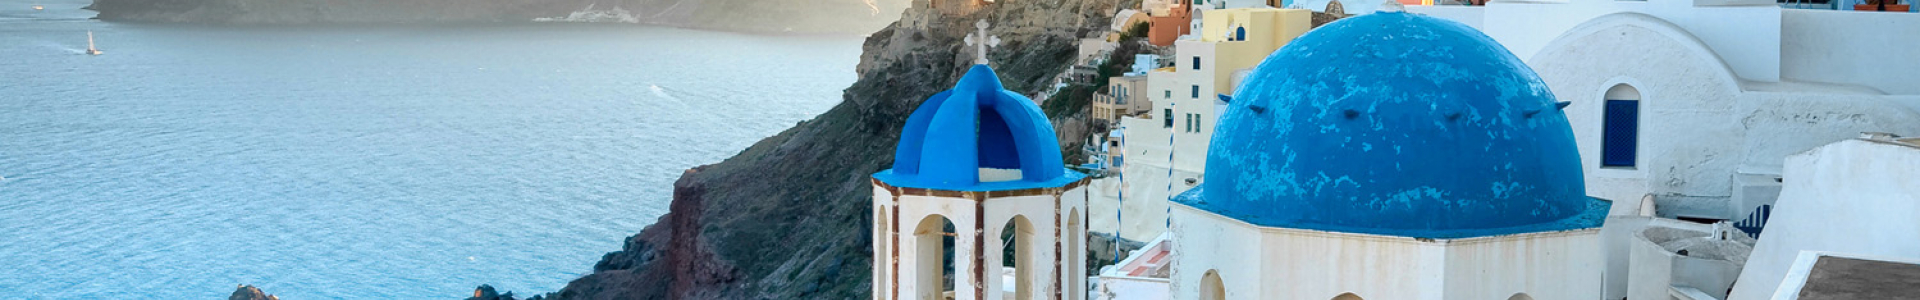 Opodo : la Grèce et ses îles en promo, séjours 8j/7n jusqu'à - 55%